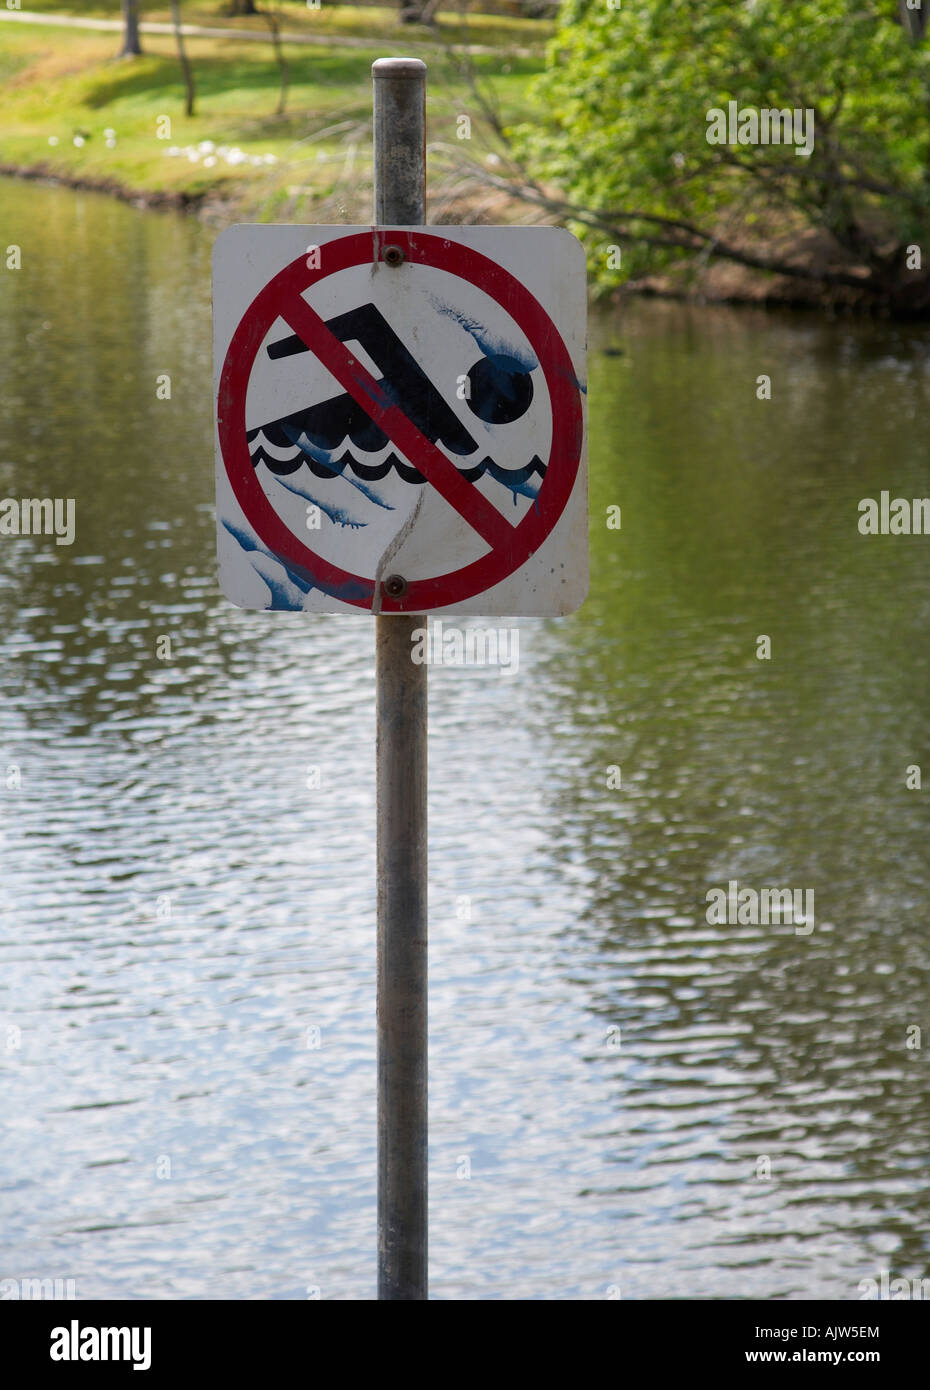 No swimming sign at the lake. Stock Photo